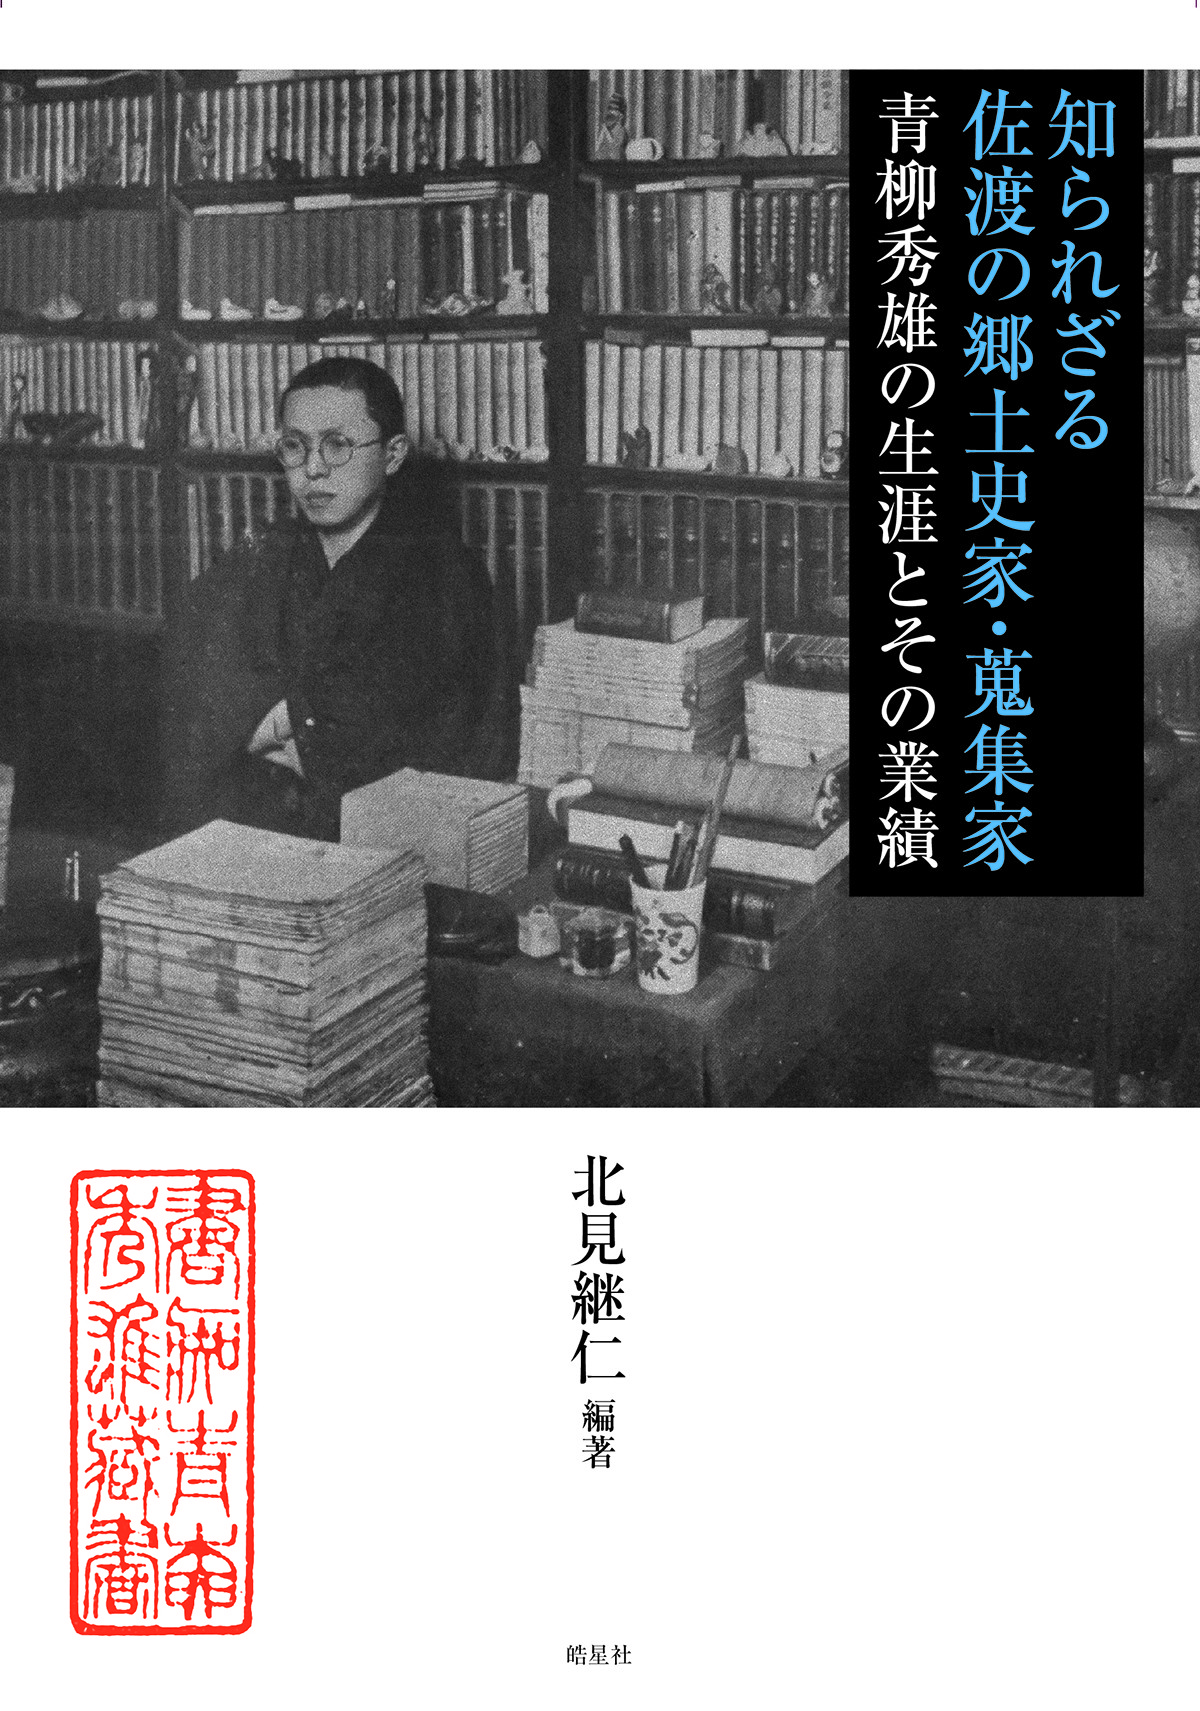 知られざる佐渡の郷土史家・蒐集家：青柳秀雄の生涯とその業績